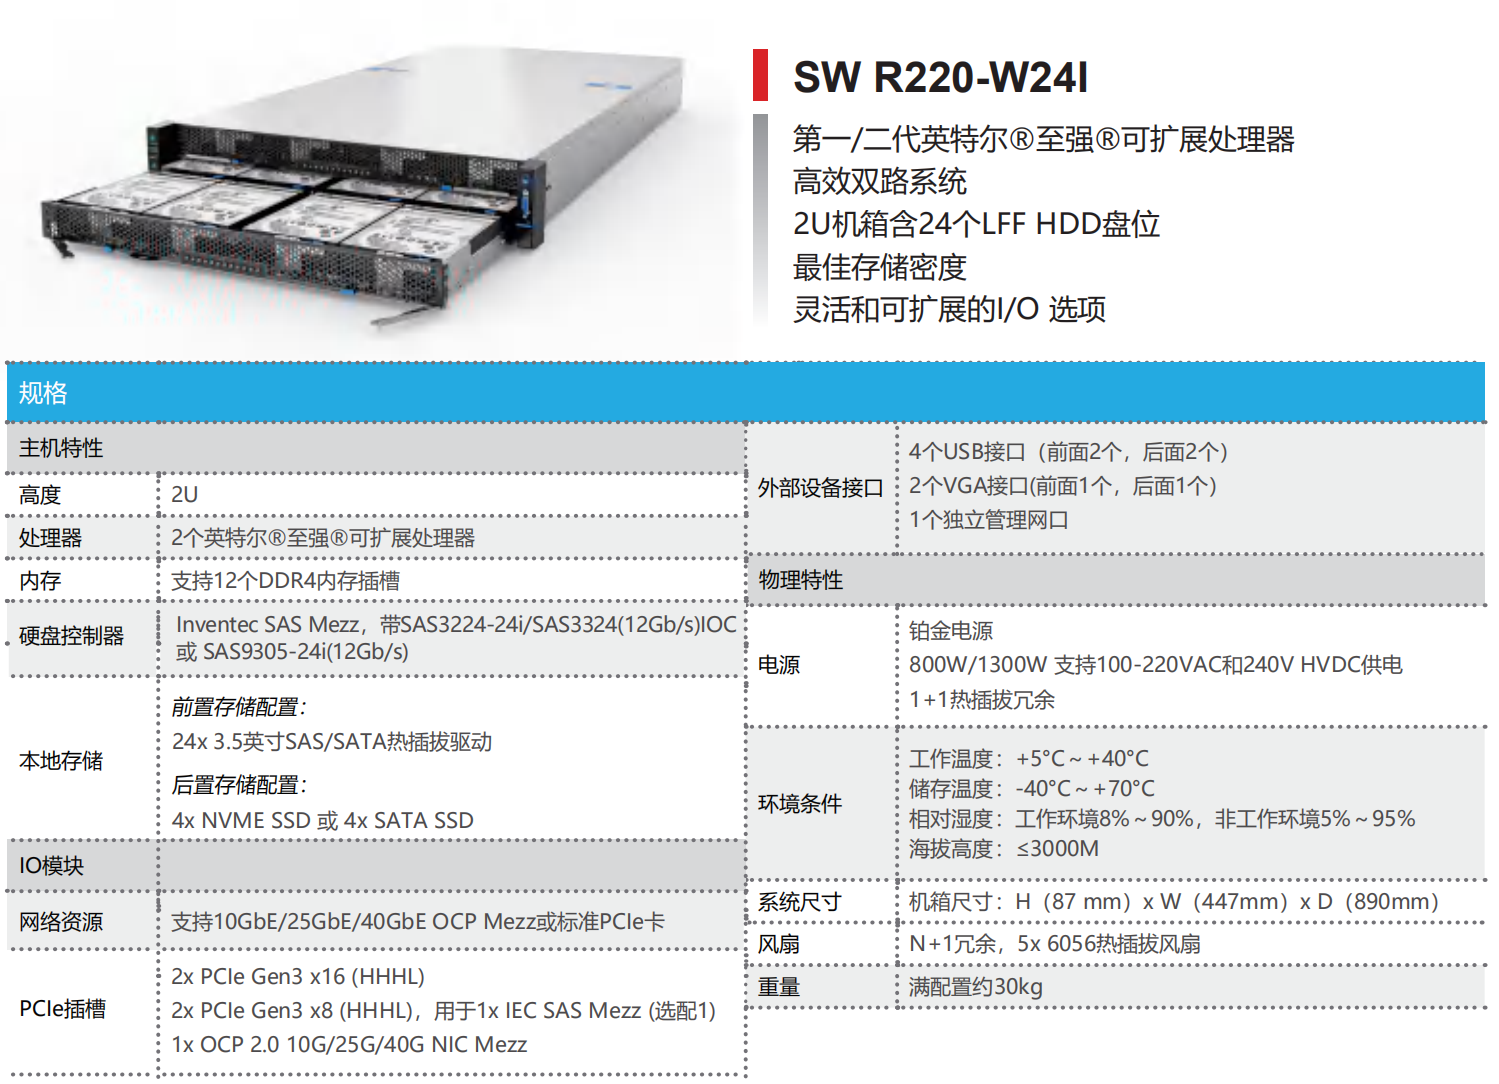 INTEL 平台存储服务器—SW R220-W24I(图1)